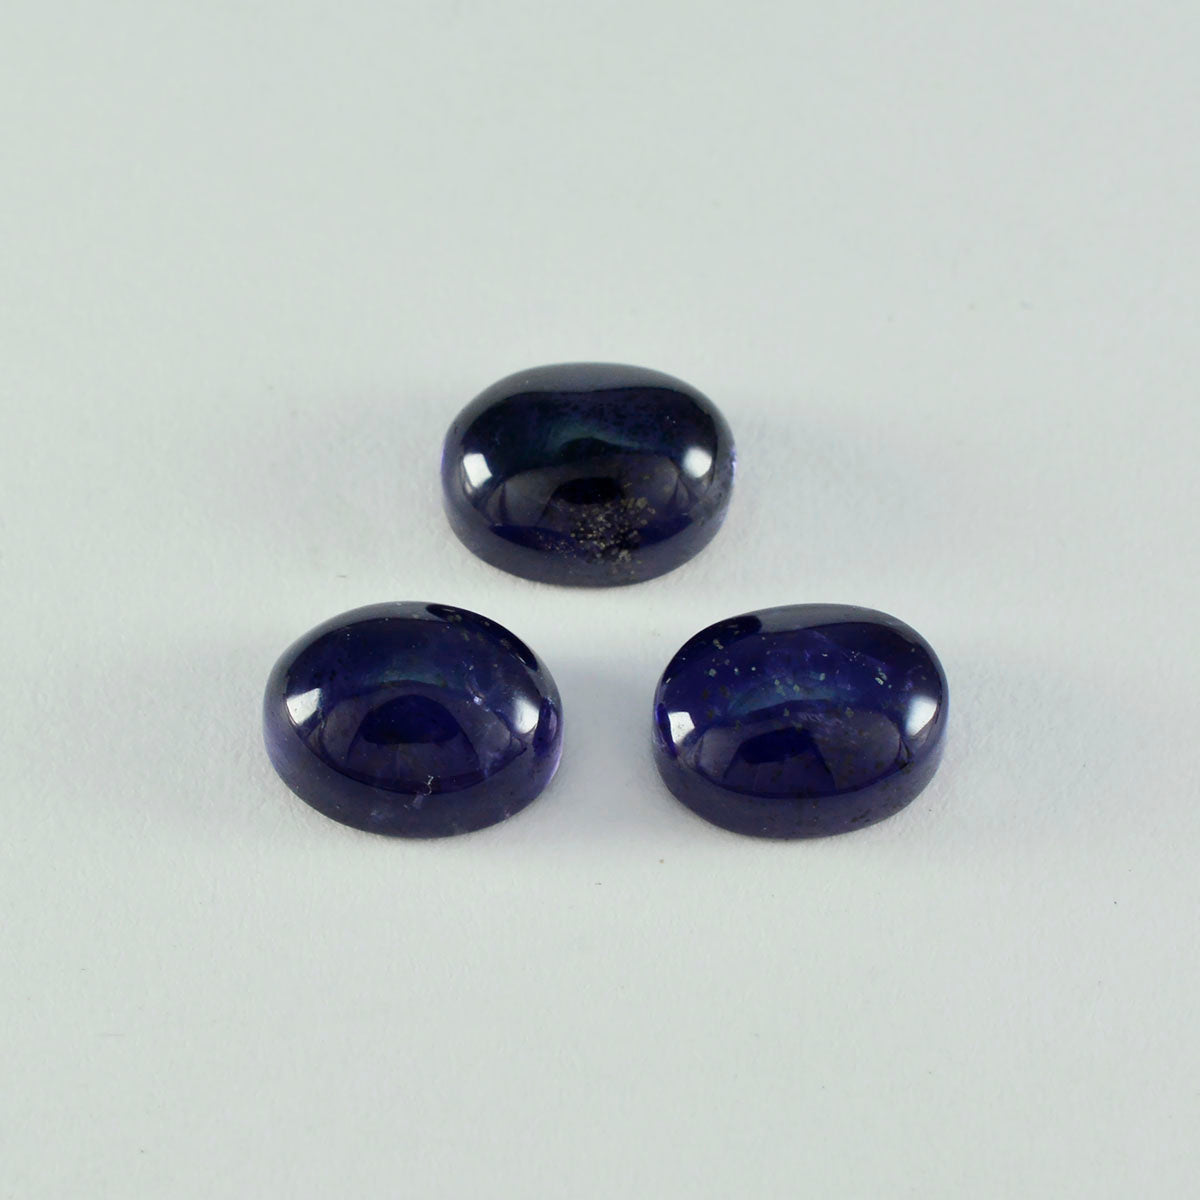 Riyogems 1PC blauwe ioliet cabochon 12x16 mm ovale vorm fantastische kwaliteitsedelsteen